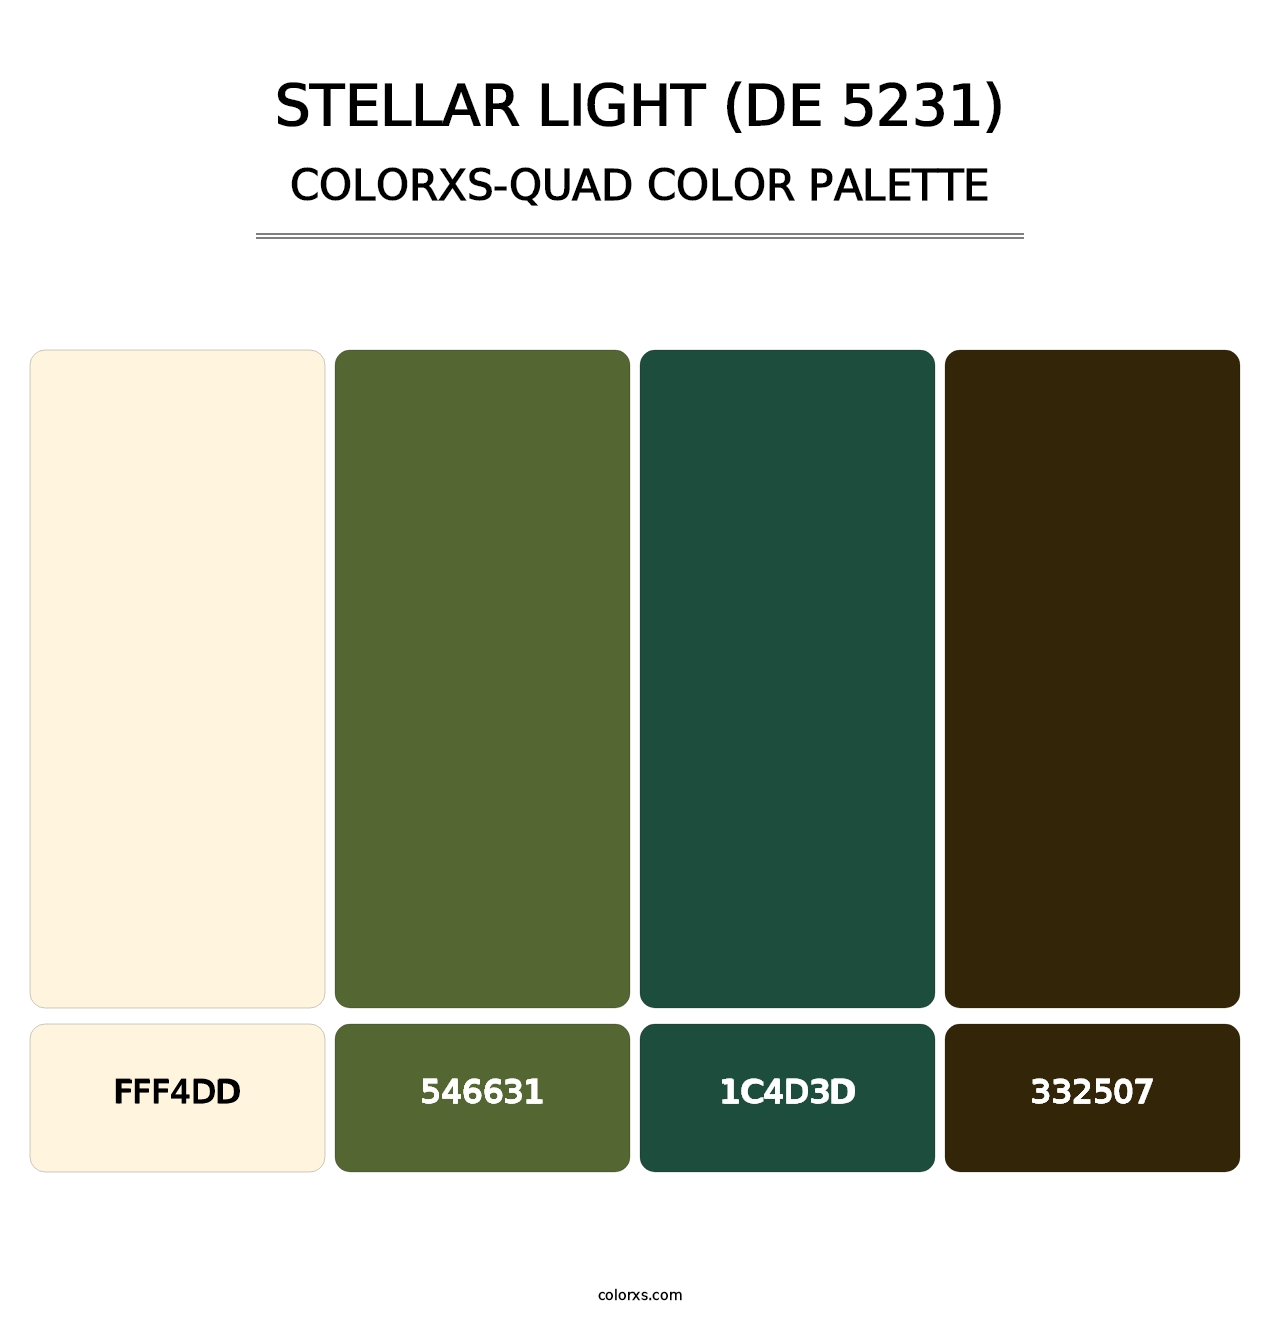 Stellar Light (DE 5231) - Colorxs Quad Palette